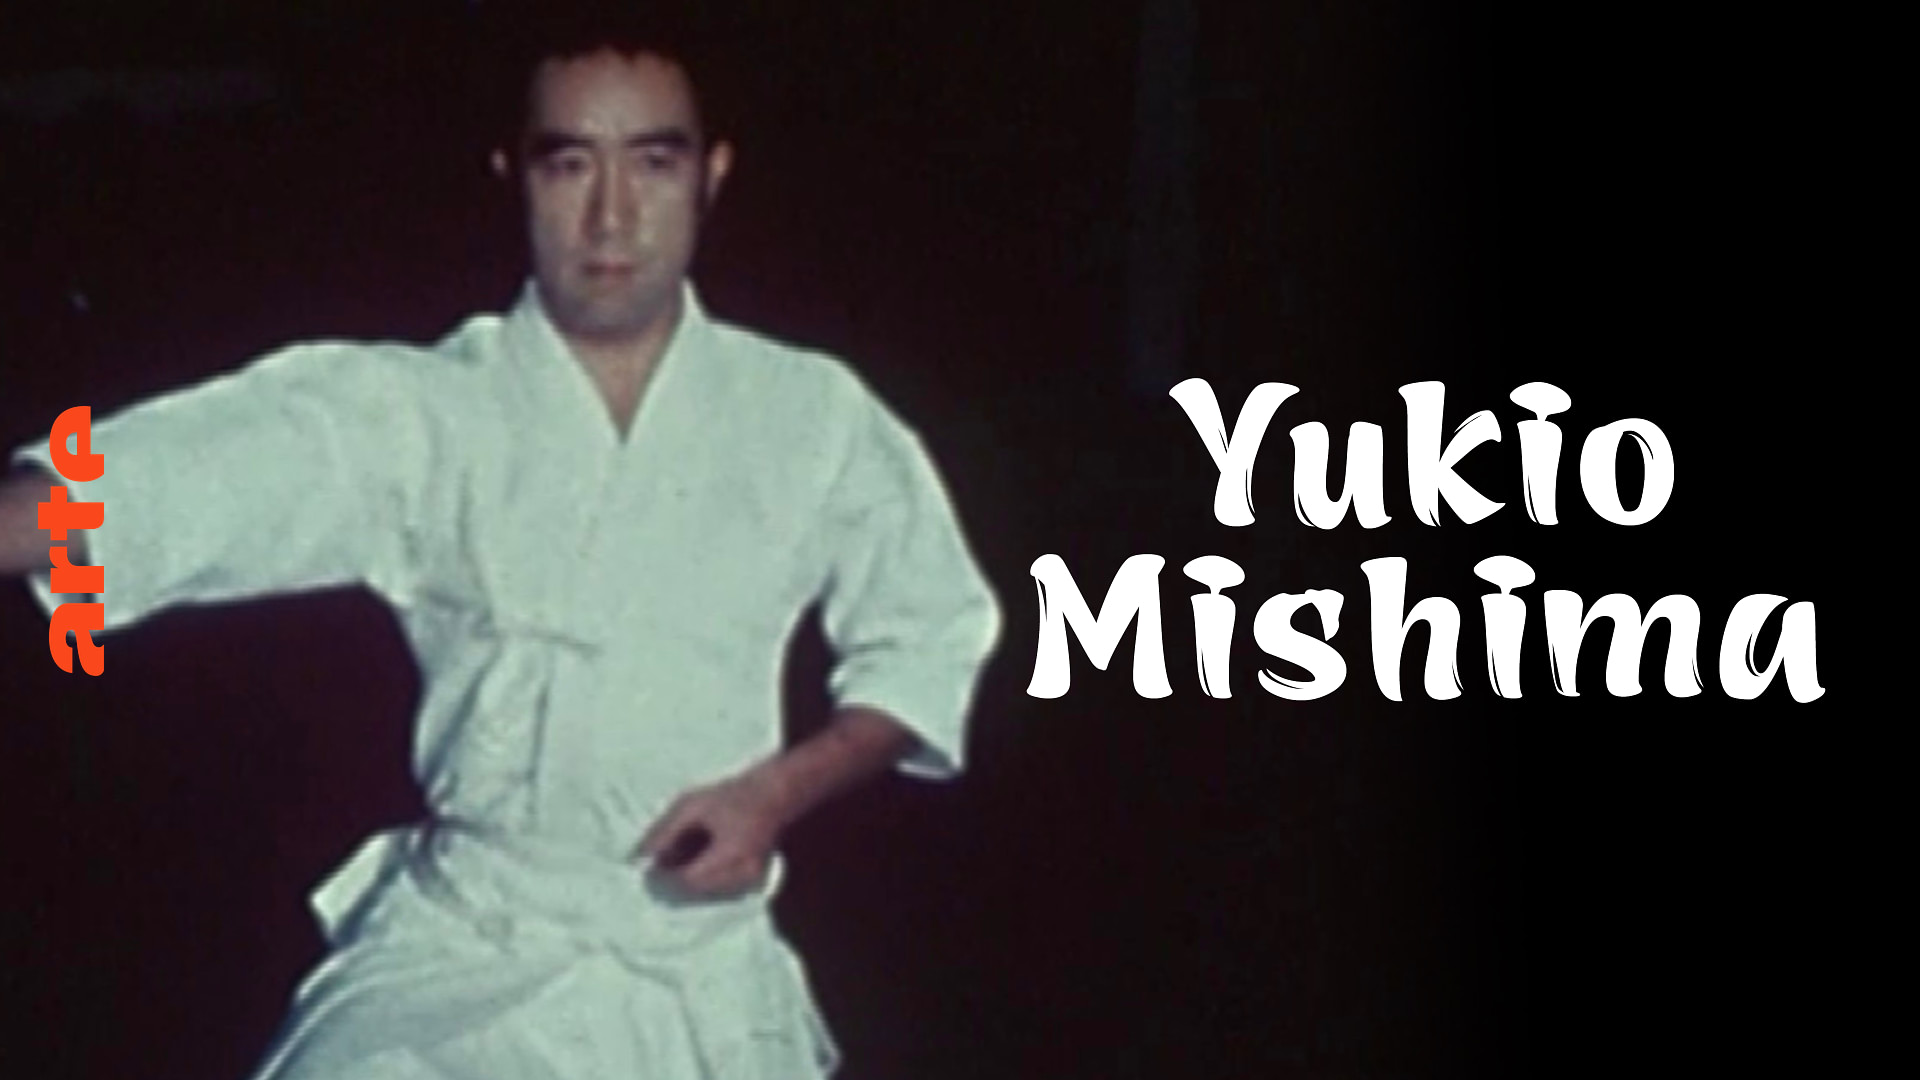 Testamento de Yukio Mishima sobre arte, ação e morte